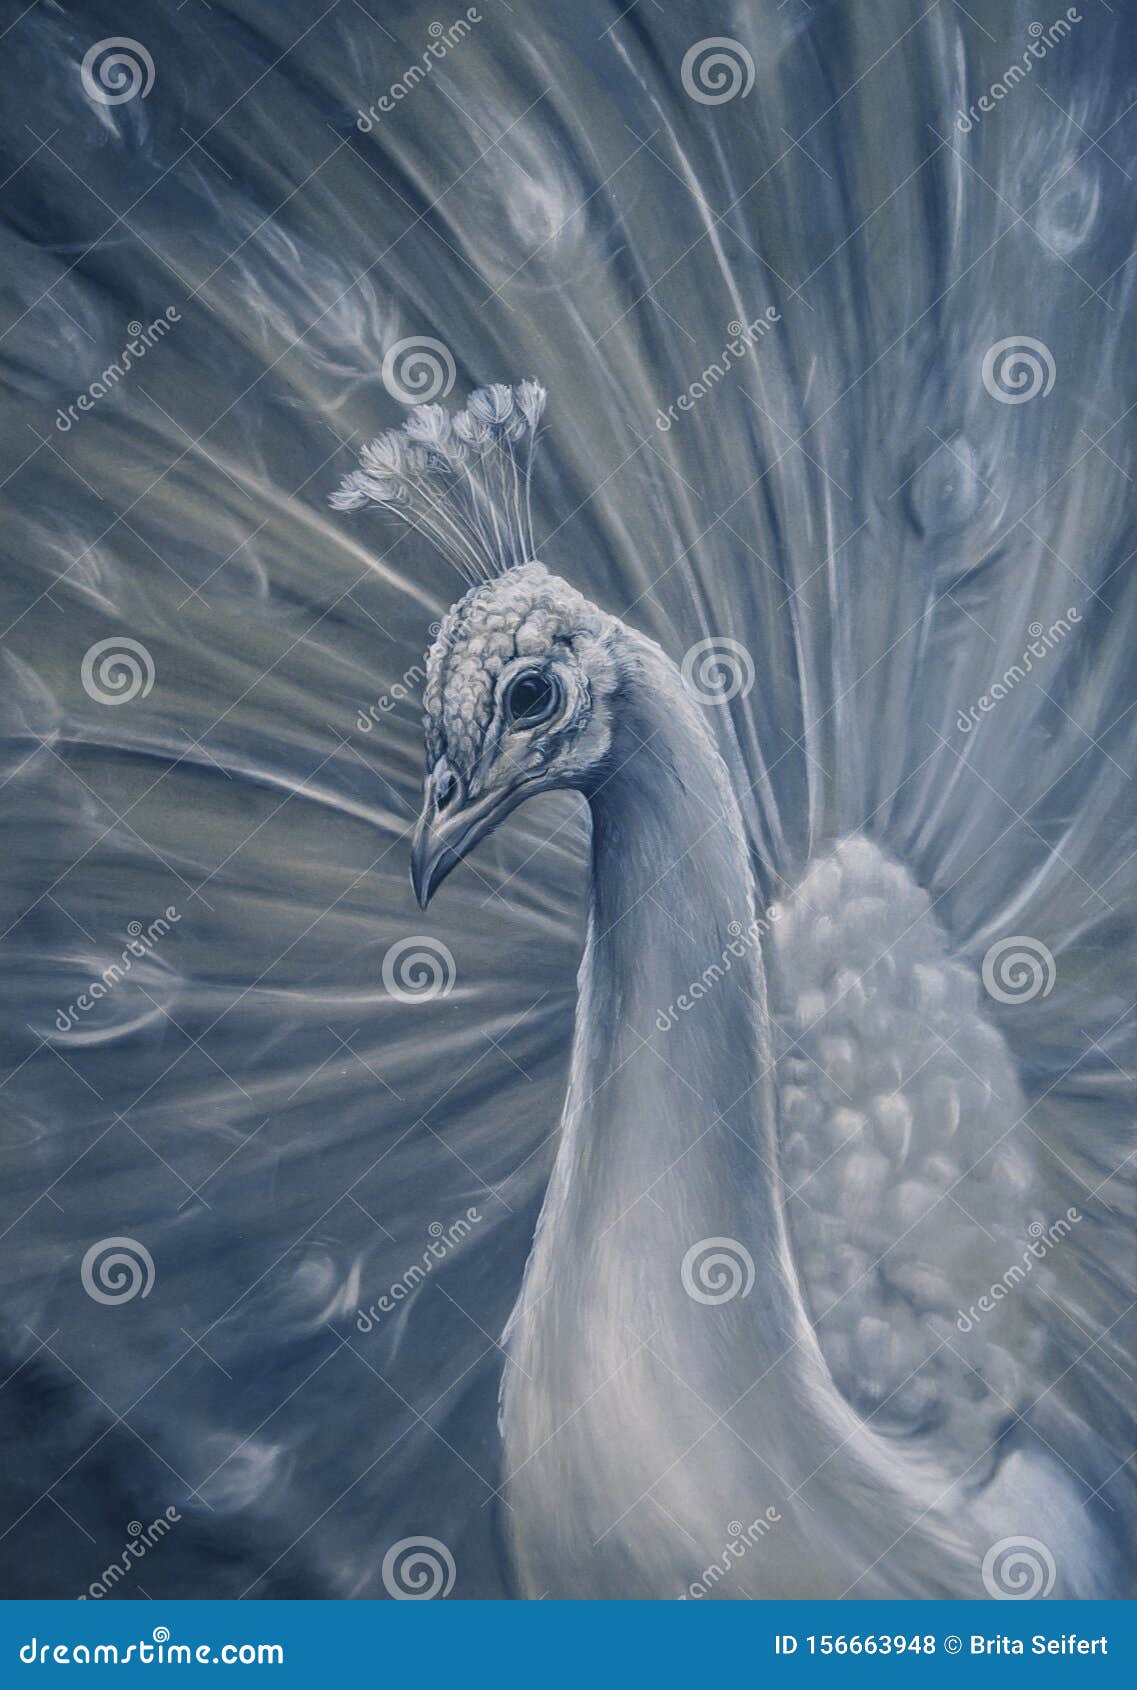 Dibujo Del Pavo Real. Ejemplo De Aves De Un Pavo Real Blanco. Pastel En  Papel Stock de ilustración - Ilustración de azul, hermoso: 156663948